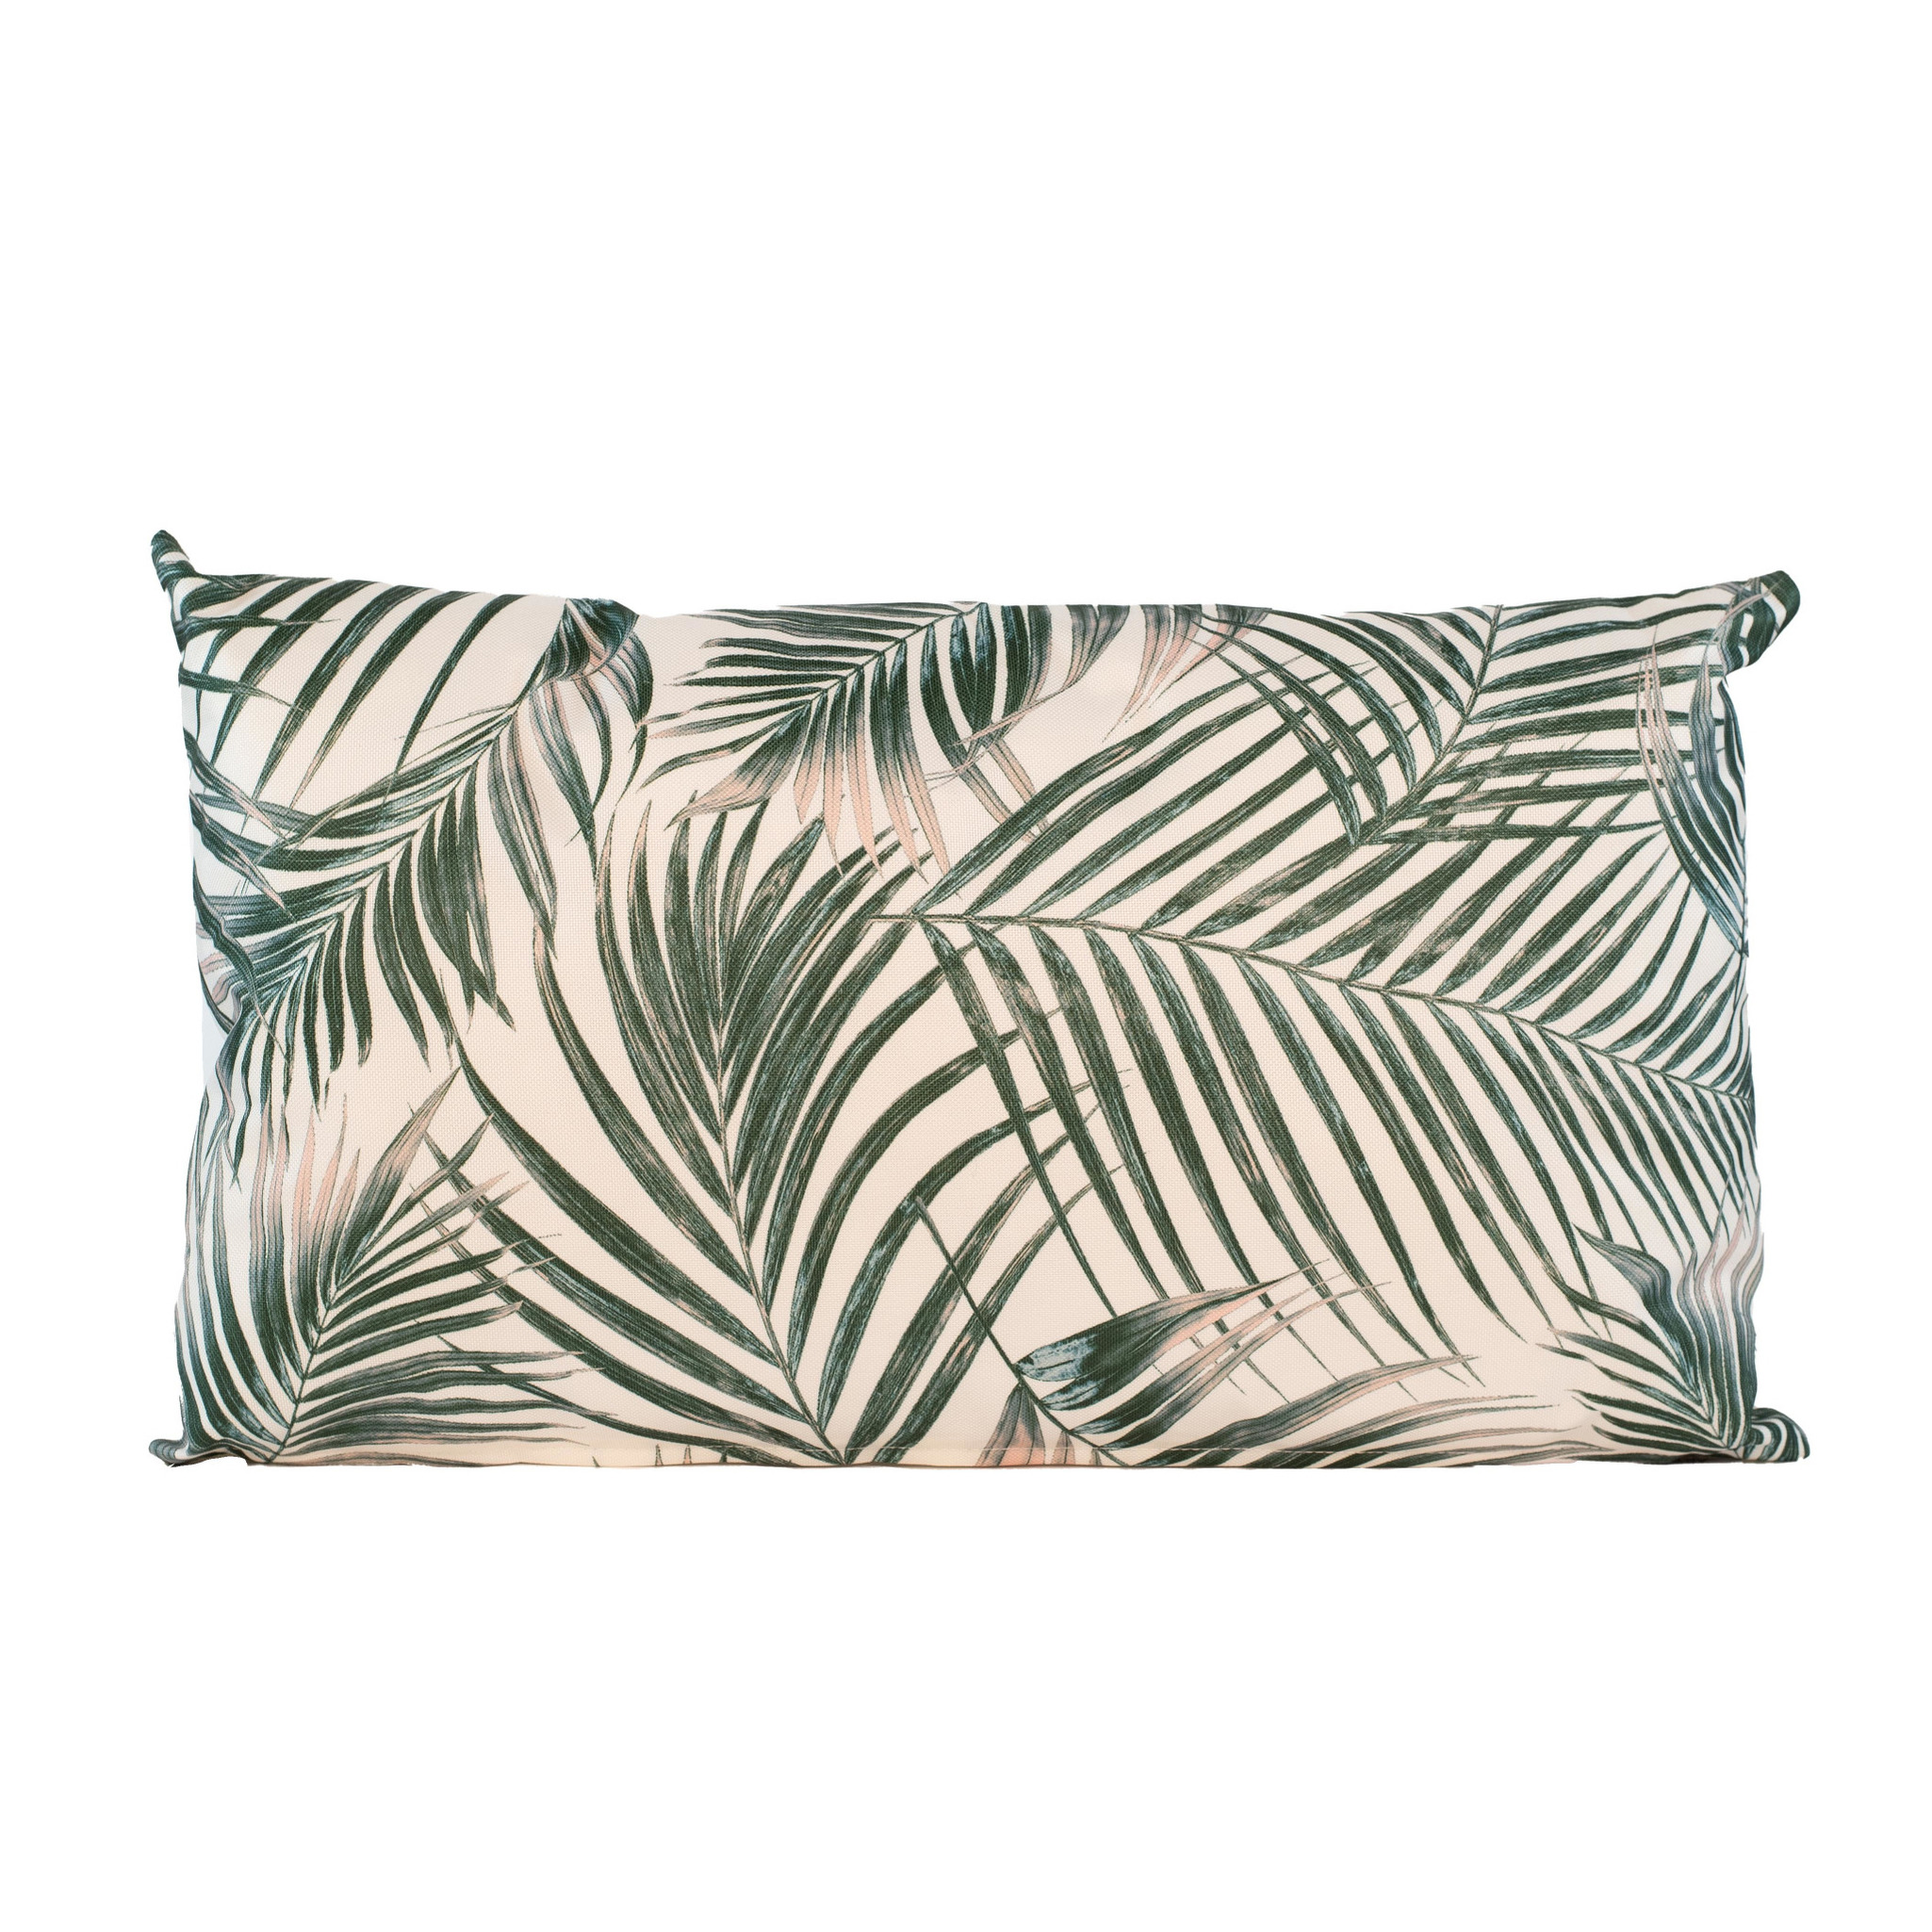 1 x Bank-sier kussens met palm plant-bladeren print voor binnen en buiten 50 x 30 cm